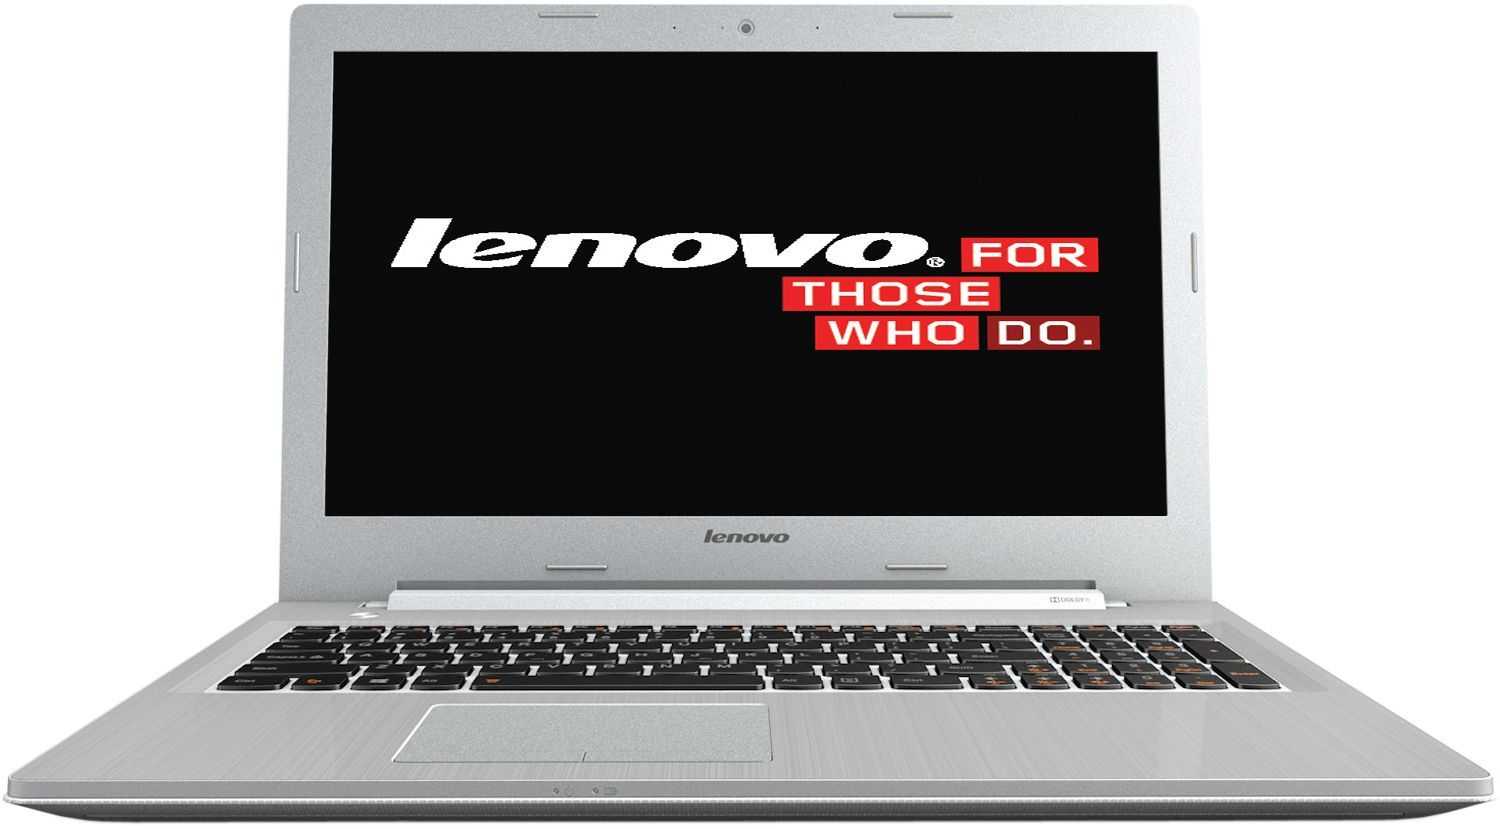 Ноутбук lenovo ideapad z500 — купить, цена и характеристики, отзывы